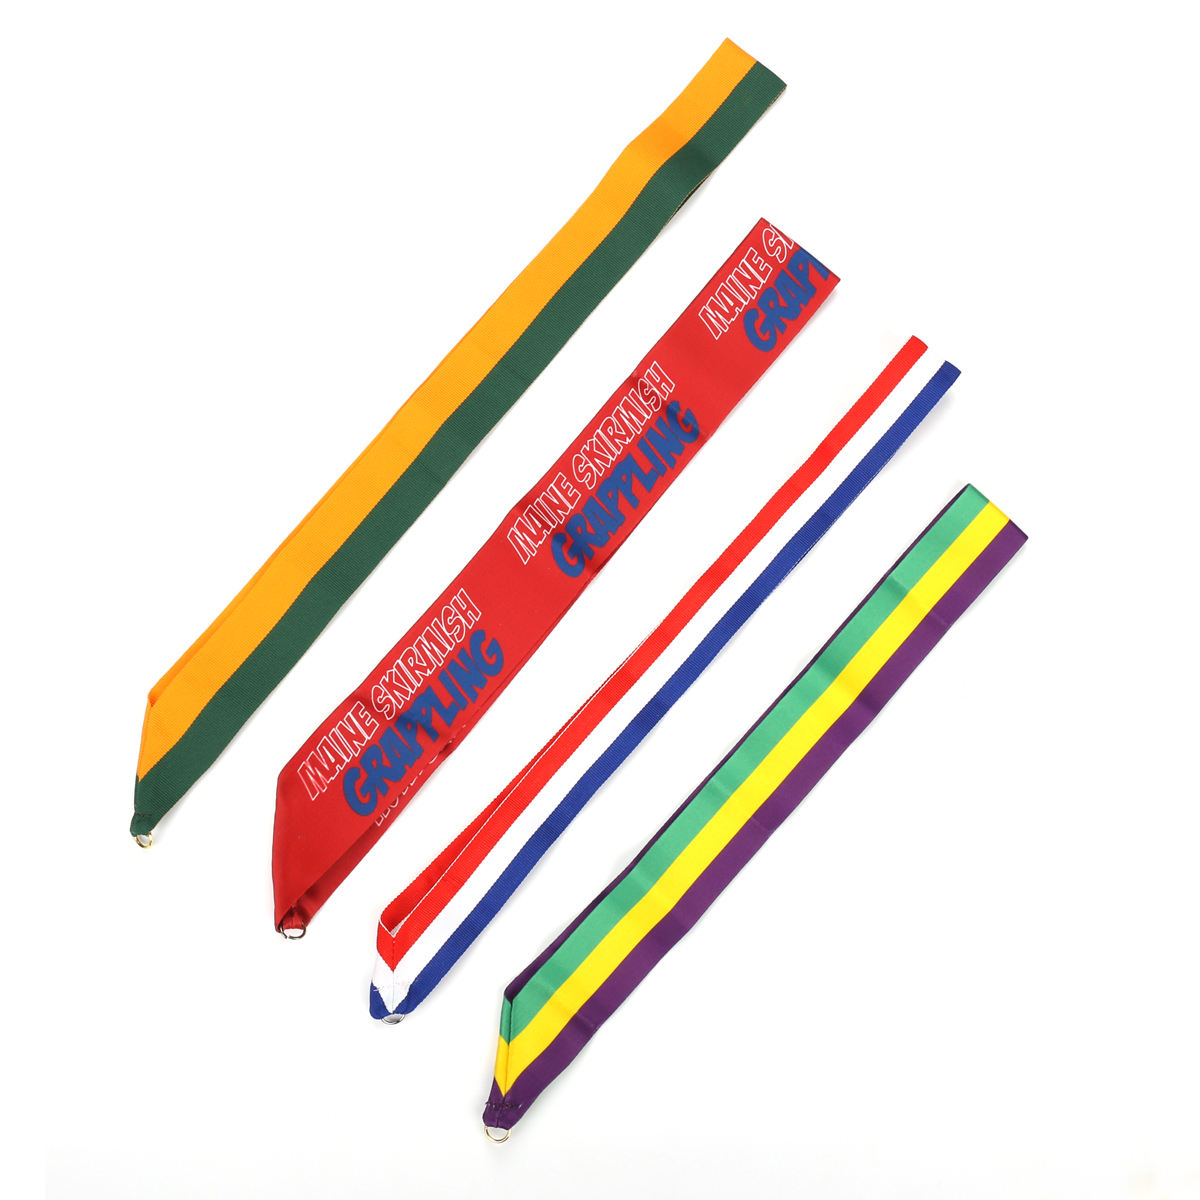 Benutzerdefiniertes OEM-Logo und Design, vollfarbig bedrucktes Polyester-Material, gewebtes Umhängeband mit Telefon-Handgelenkschlaufe